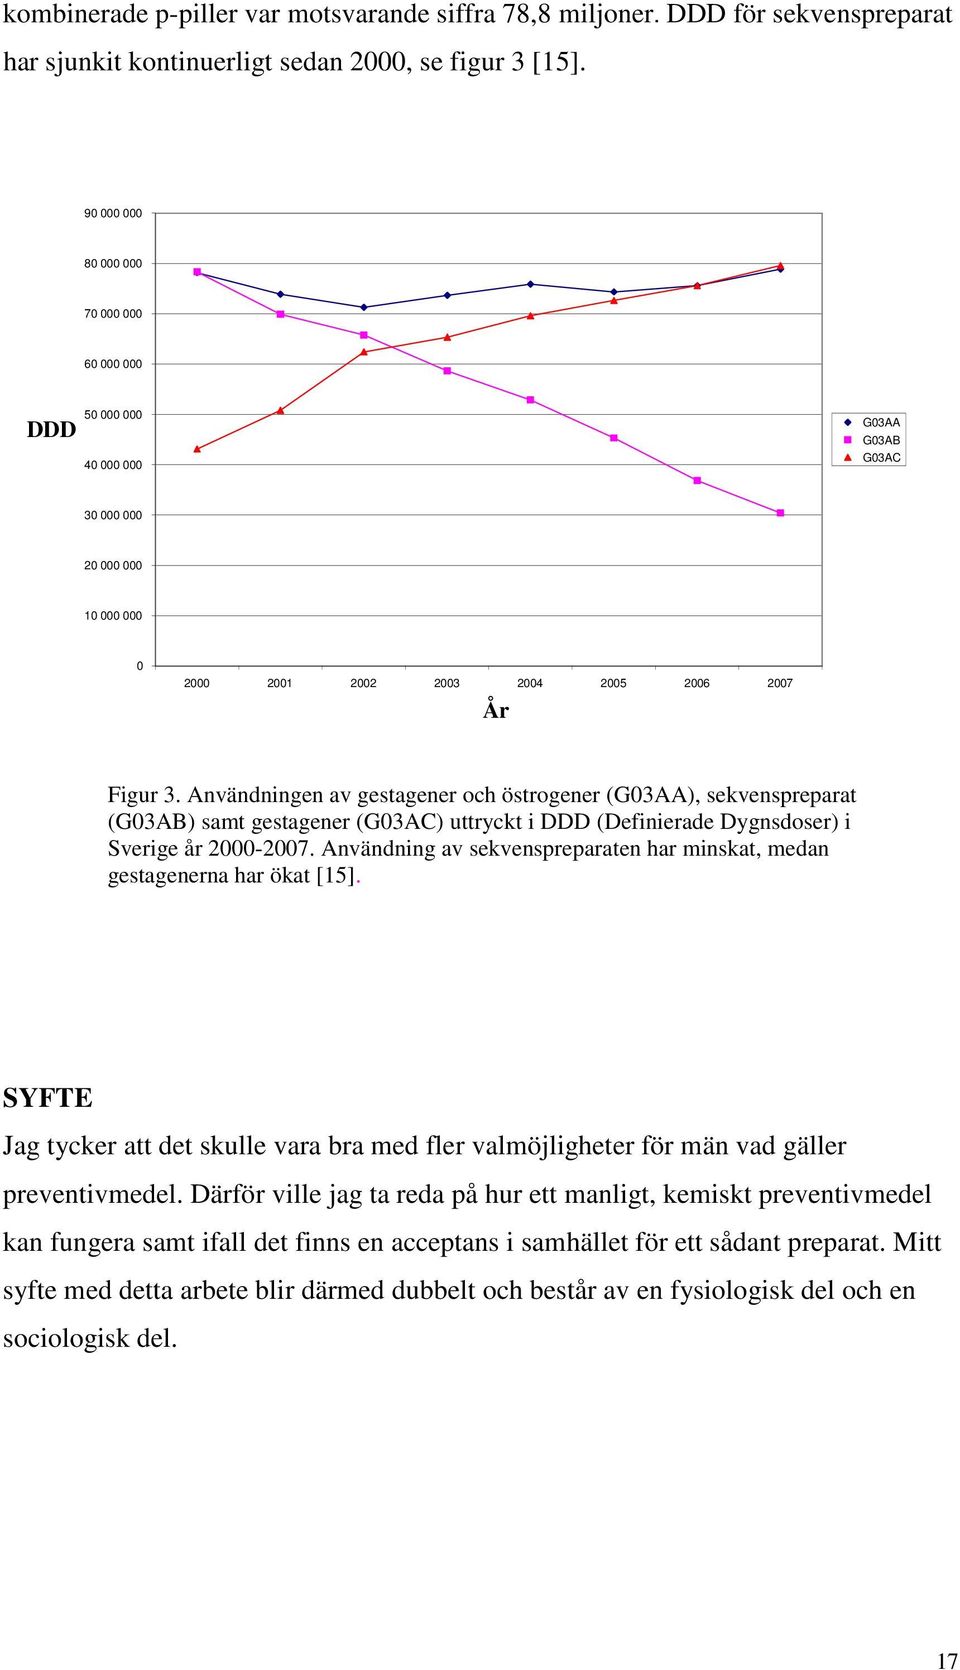 Användningen av gestagener och östrogener (G03AA), sekvenspreparat (G03AB) samt gestagener (G03AC) uttryckt i DDD (Definierade Dygnsdoser) i Sverige år 2000-2007.